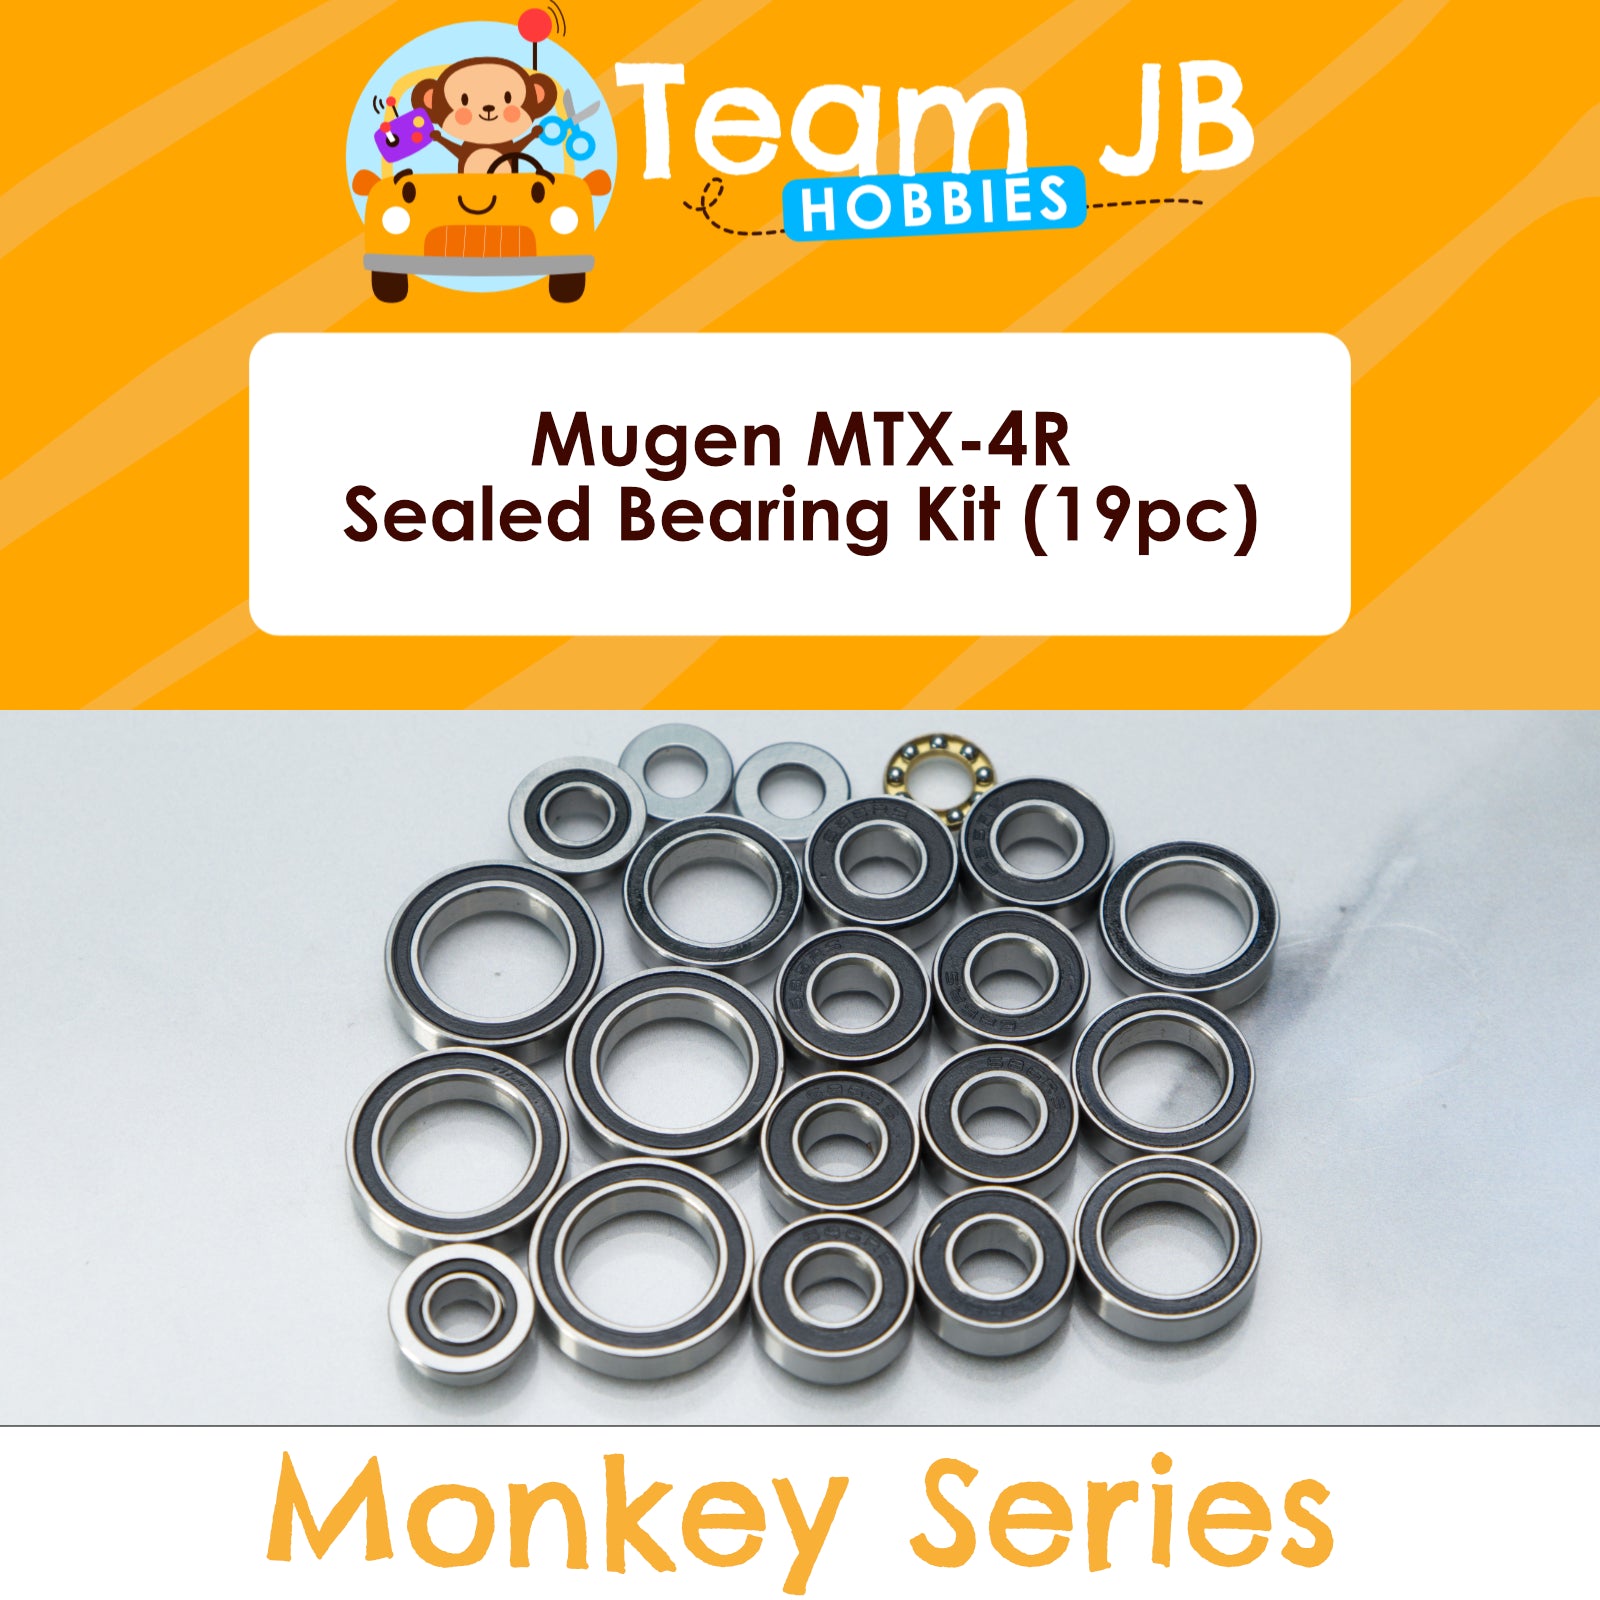 Mugen MTX-4R - Sealed Bearing Kit